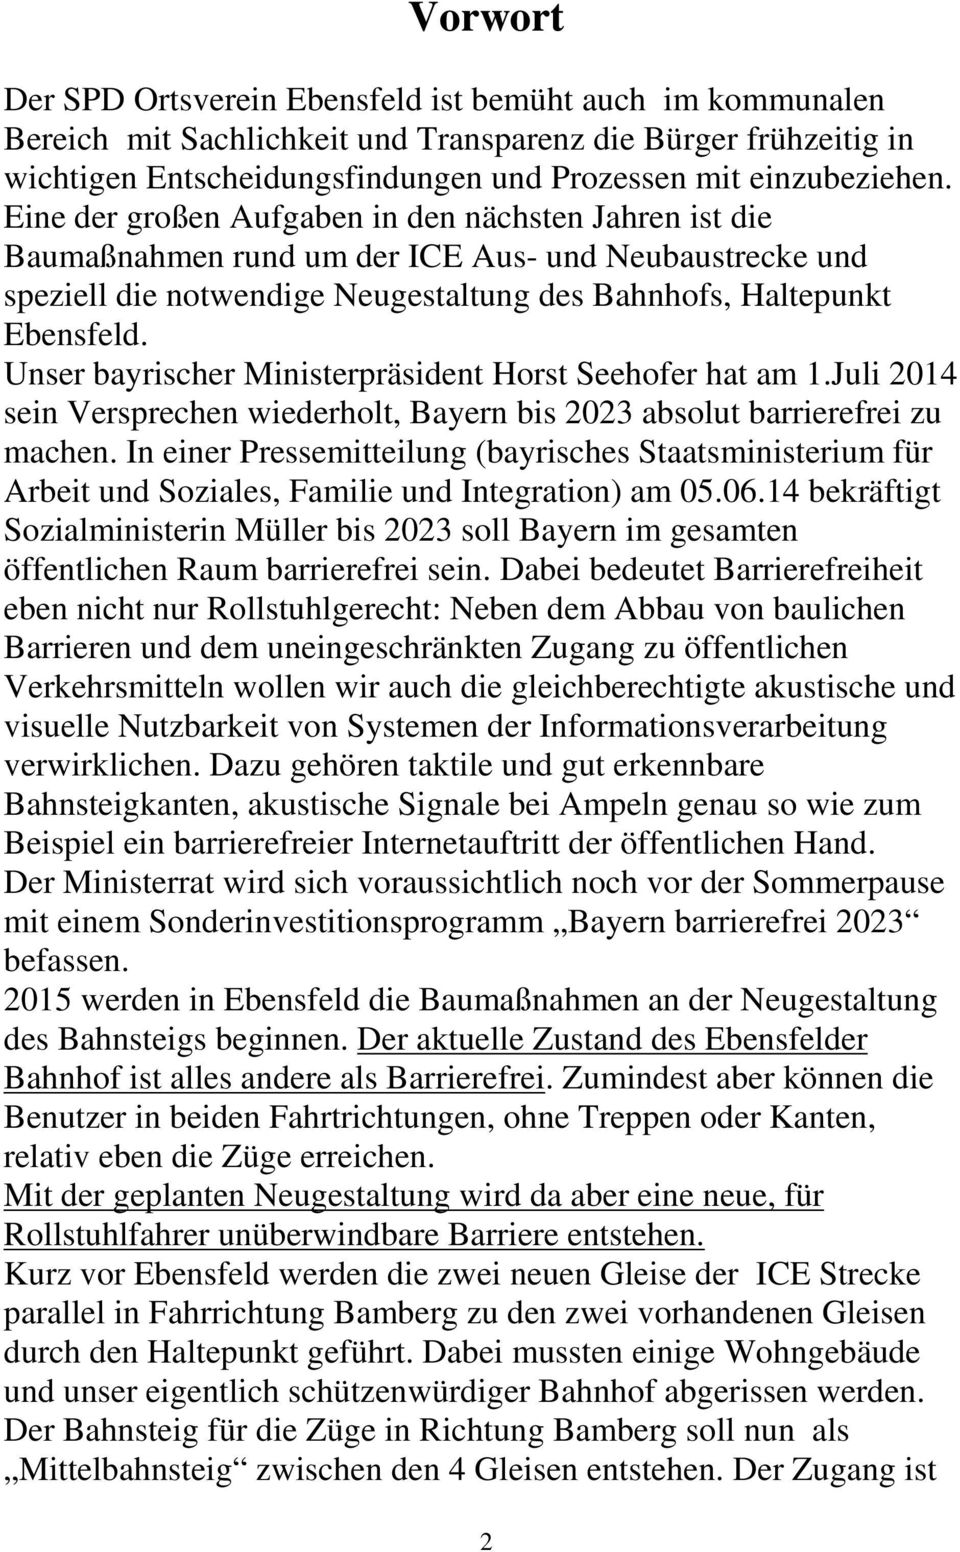 Unser bayrischer Ministerpräsident Horst Seehofer hat am 1.Juli 2014 sein Versprechen wiederholt, Bayern bis 2023 absolut barrierefrei zu machen.